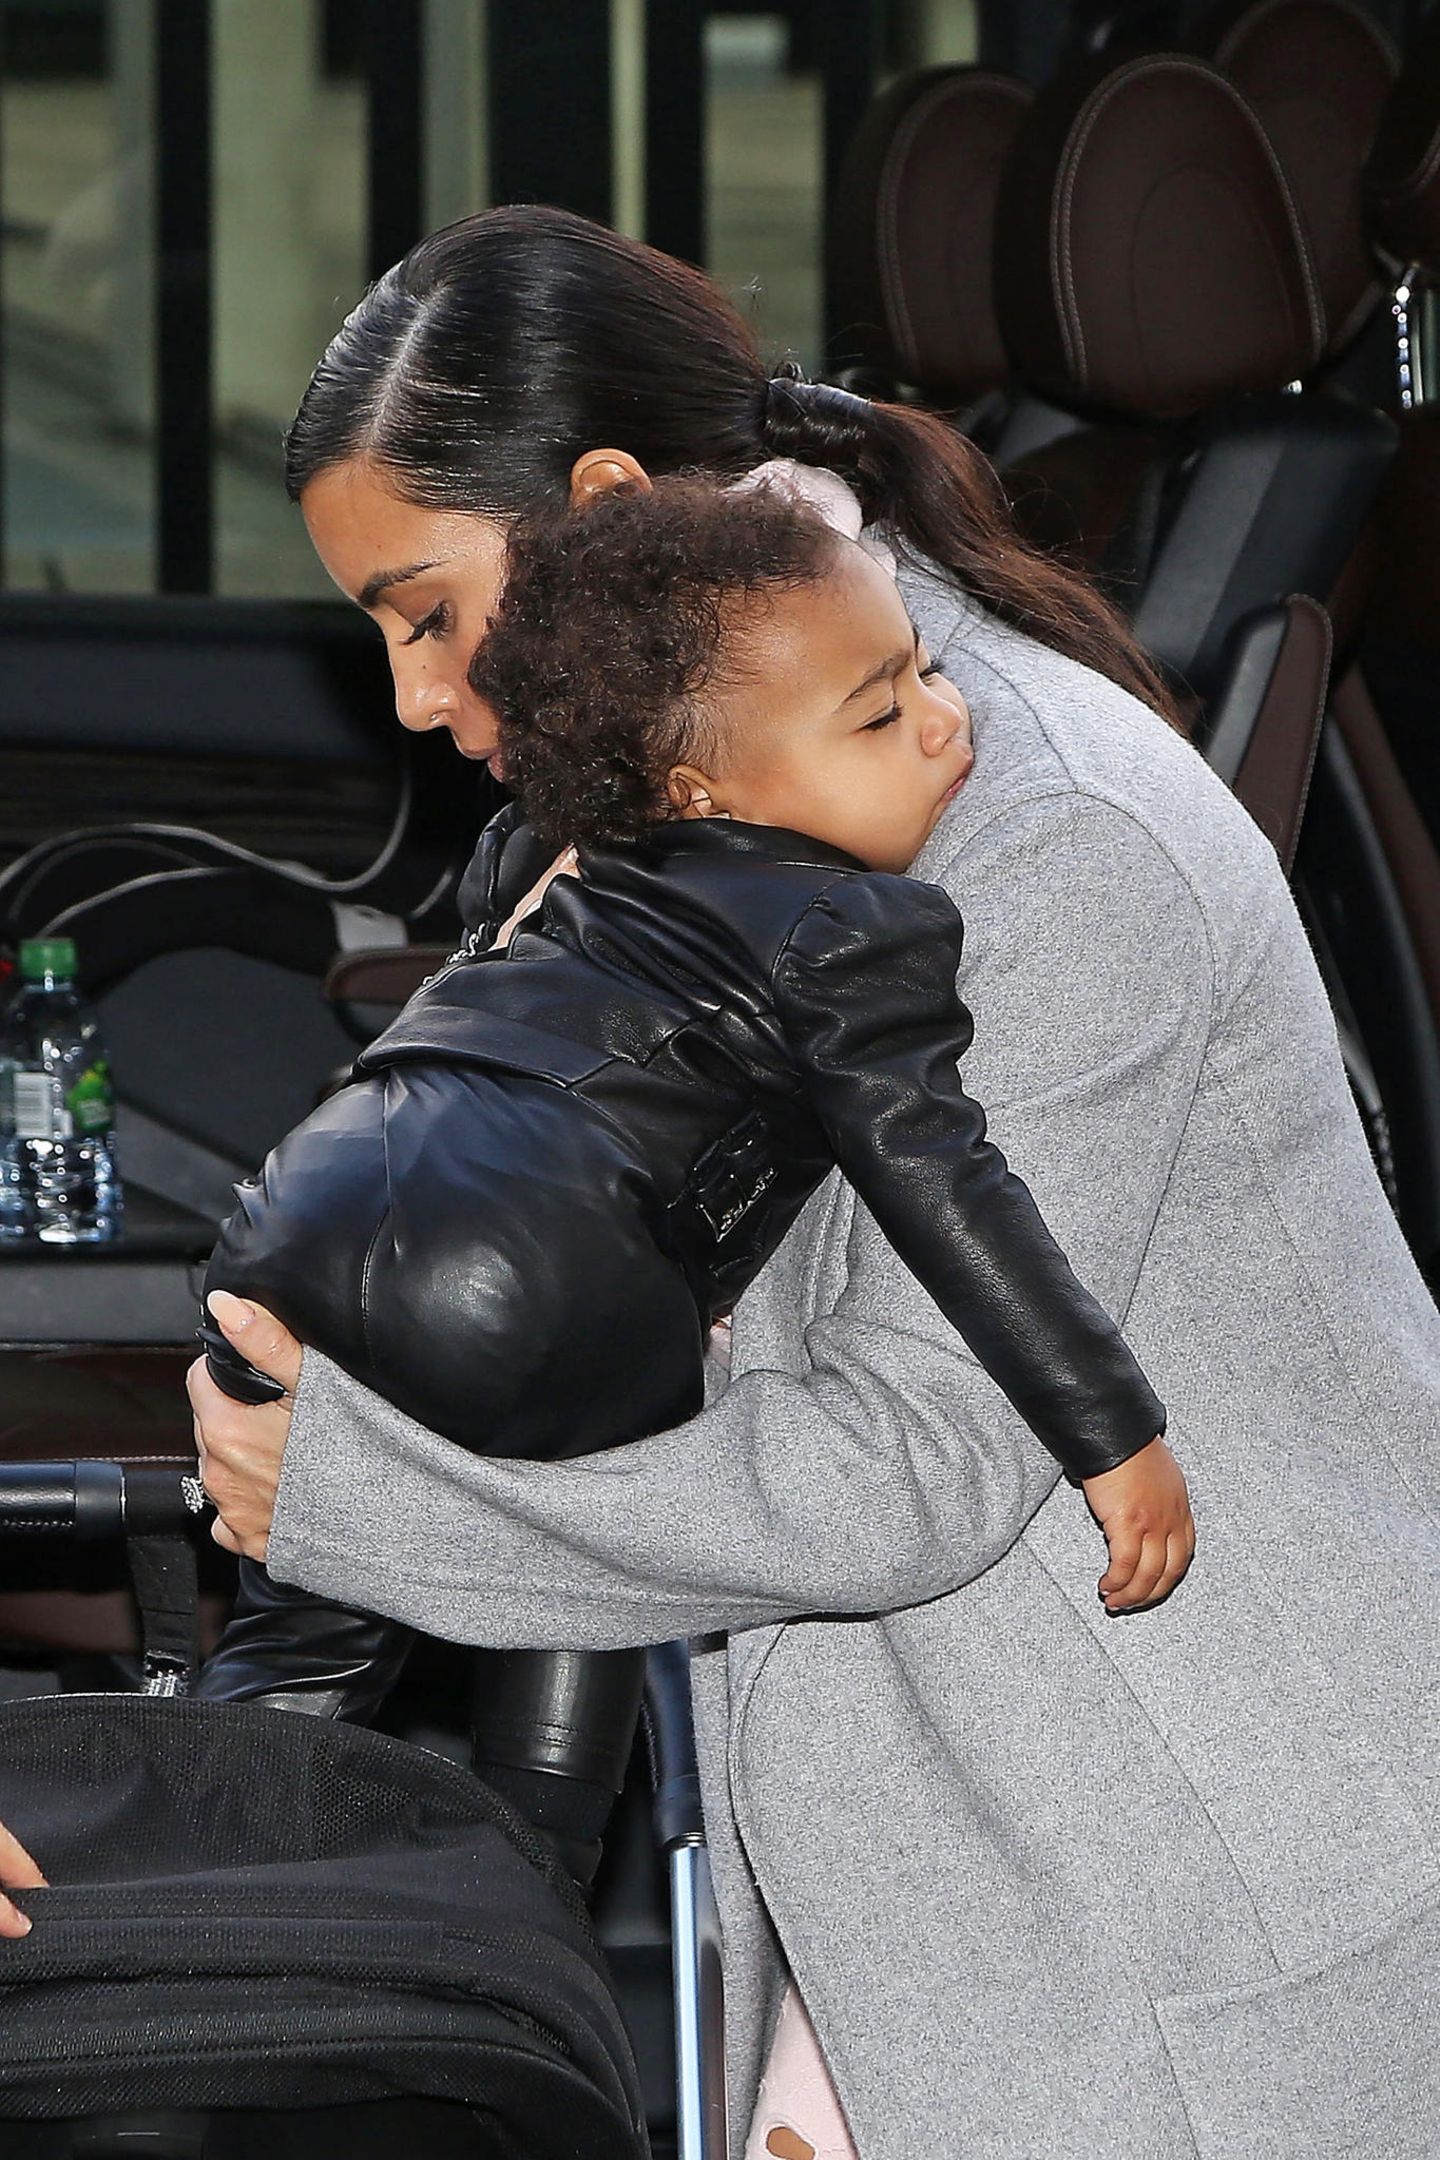 North, als erste Tochter von Kim Kardashian und Kanye West im Juni 2013 geboren, ist im trubeligen Jetset-Leben ihrer Eltern gerne mal auf Mamas Arm eingeschlafen. Für deren Arm ist sie aber mittlerweile schon etwas zu groß.